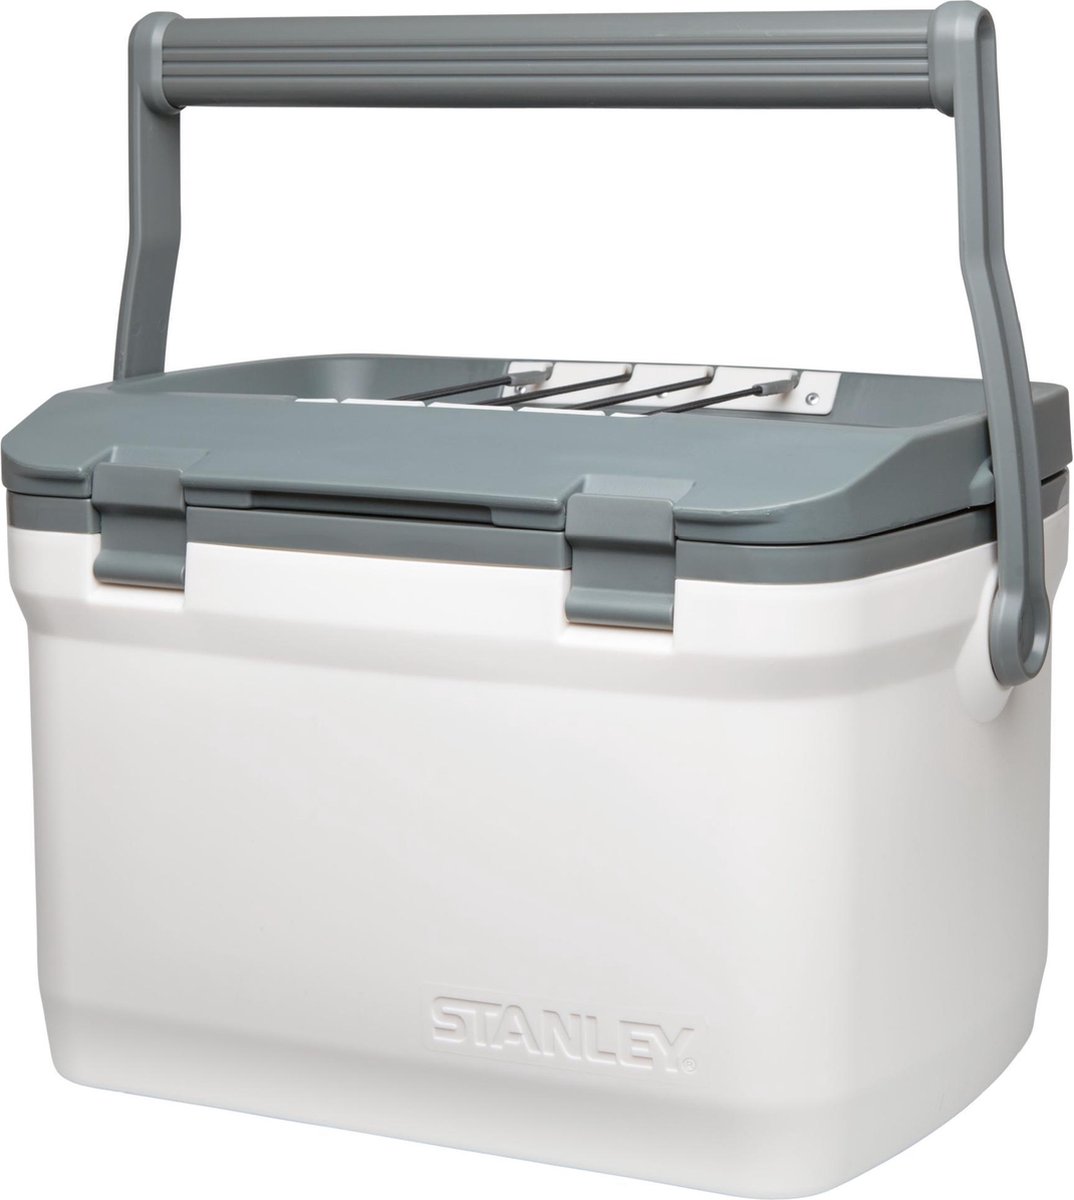 Stanley The Easy Carry Outdoor Koelbox 15.1 ltr - - Grijs